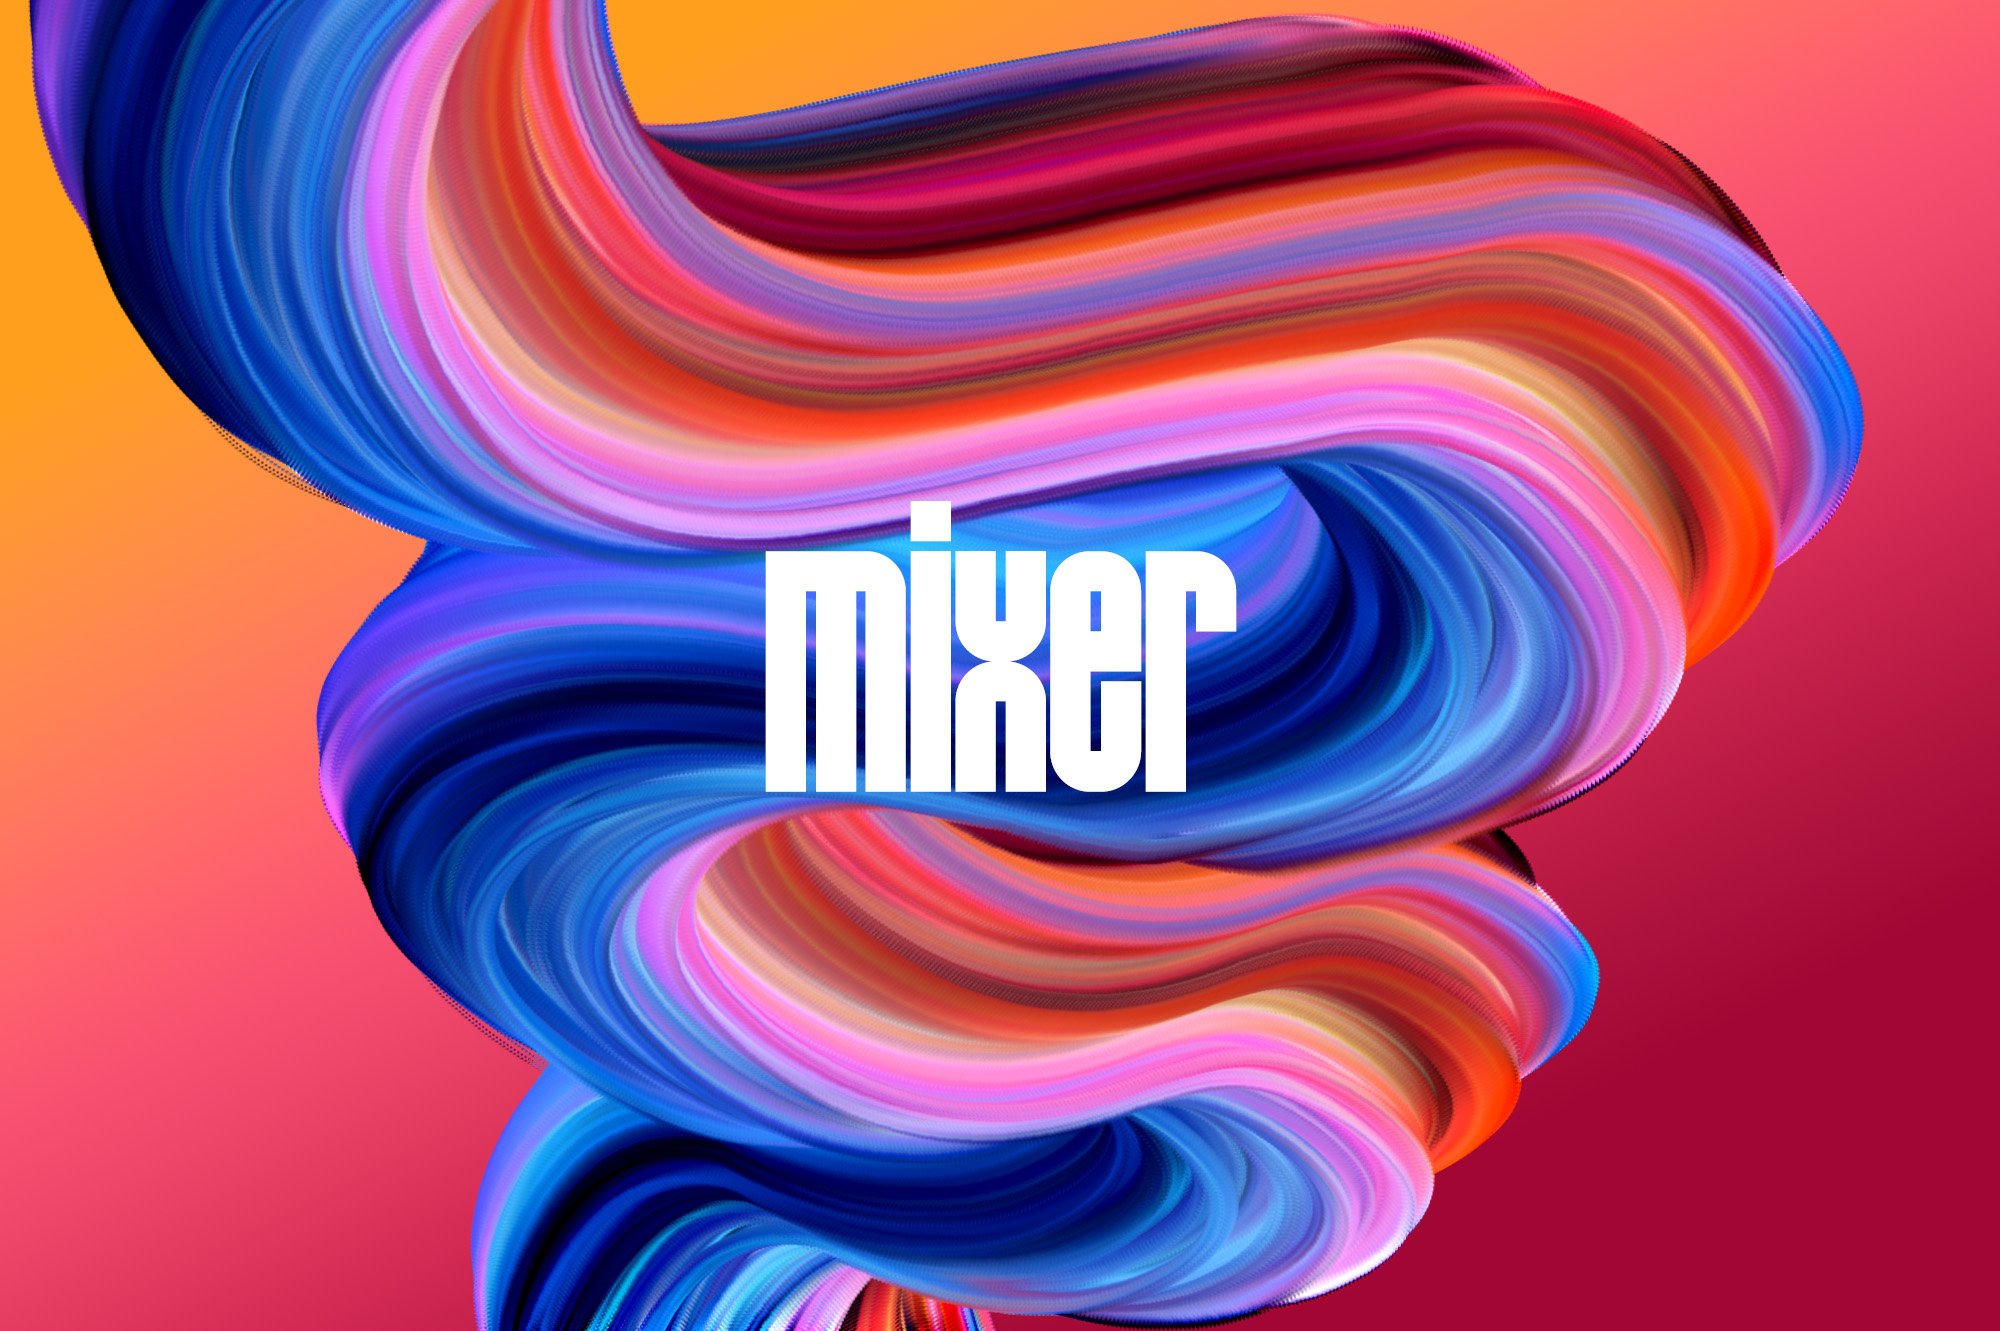 13 mixer preview example 02 245